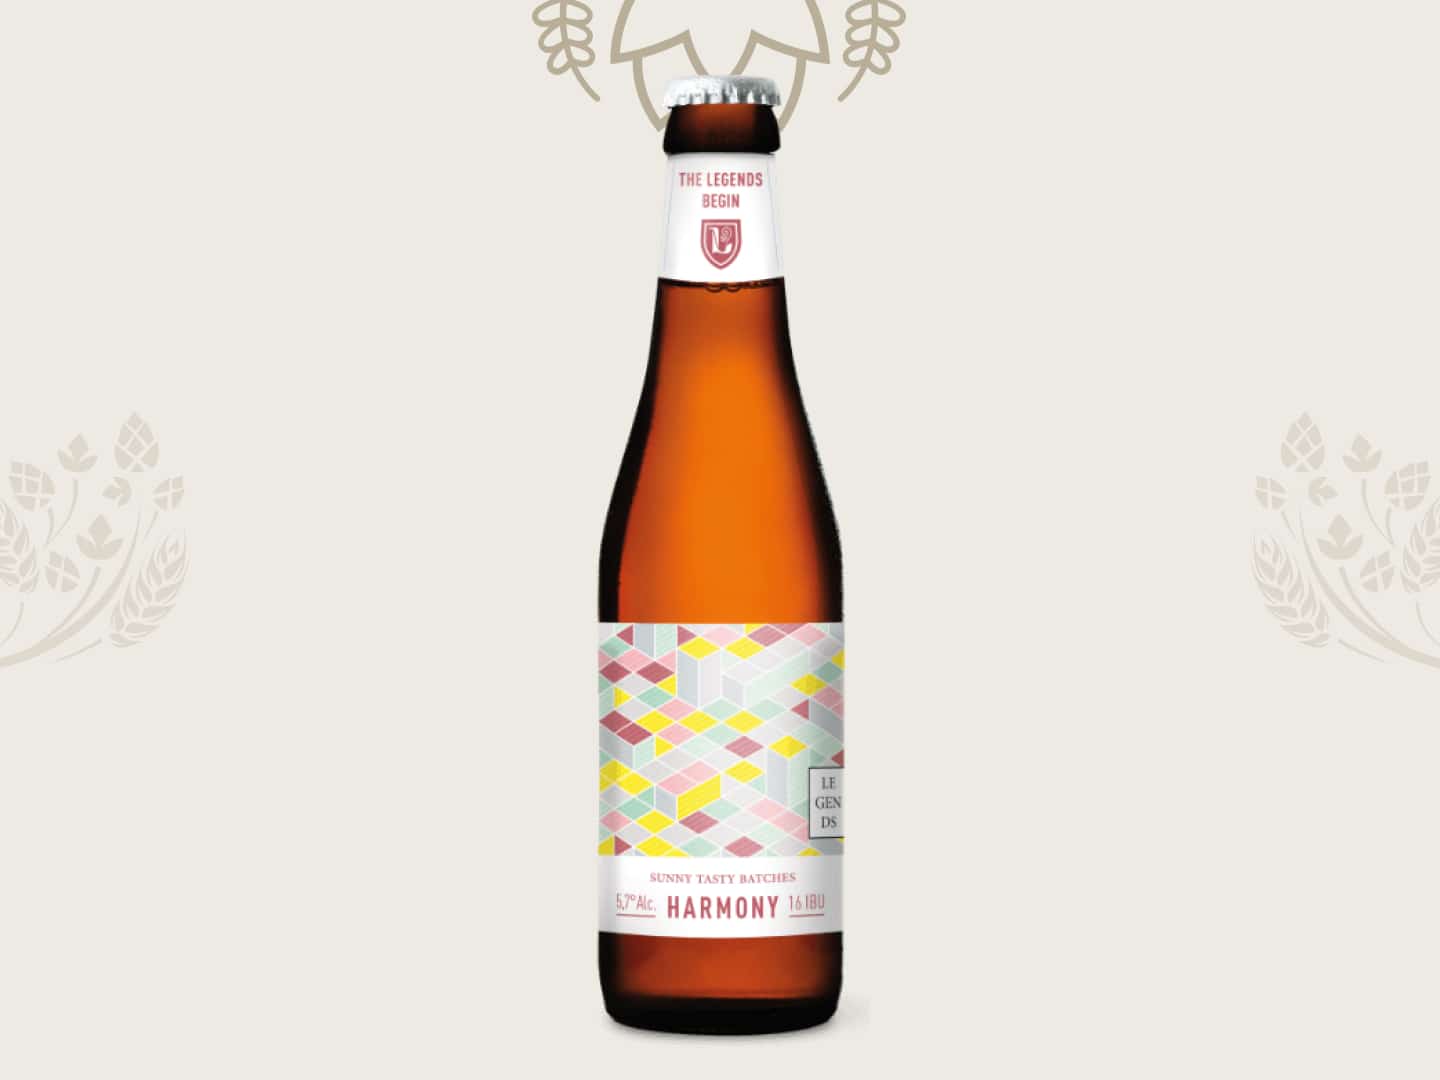 Bouteille de 33 cl - bière blonde - Gamme Legends - Harmony - bière du soleil - Brasserie des Légendes - 5.7% volume d'alcool - à Ath